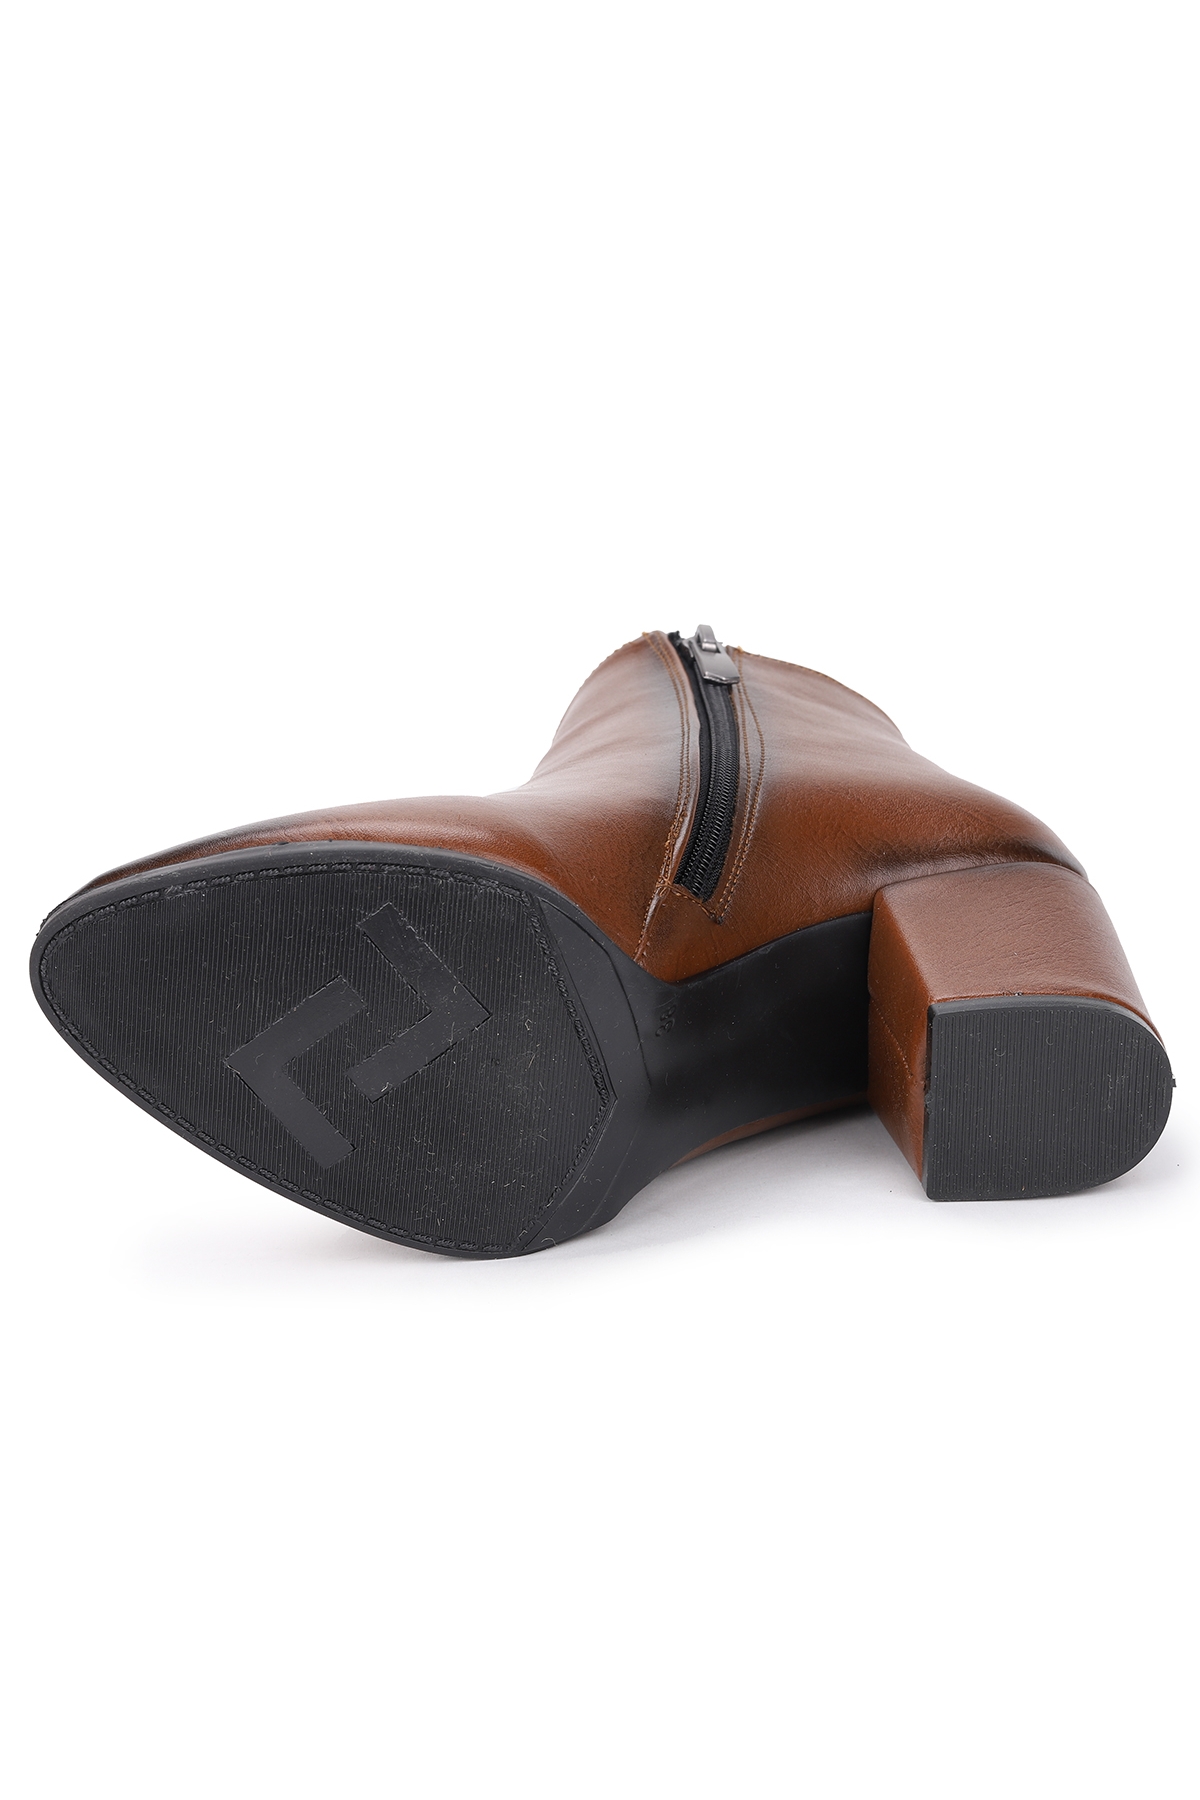 Woggo 504 Cilt 6 Cm Topuk Kadın Bot Ayakkabı Fiyatları, Özellikleri ve  Yorumları